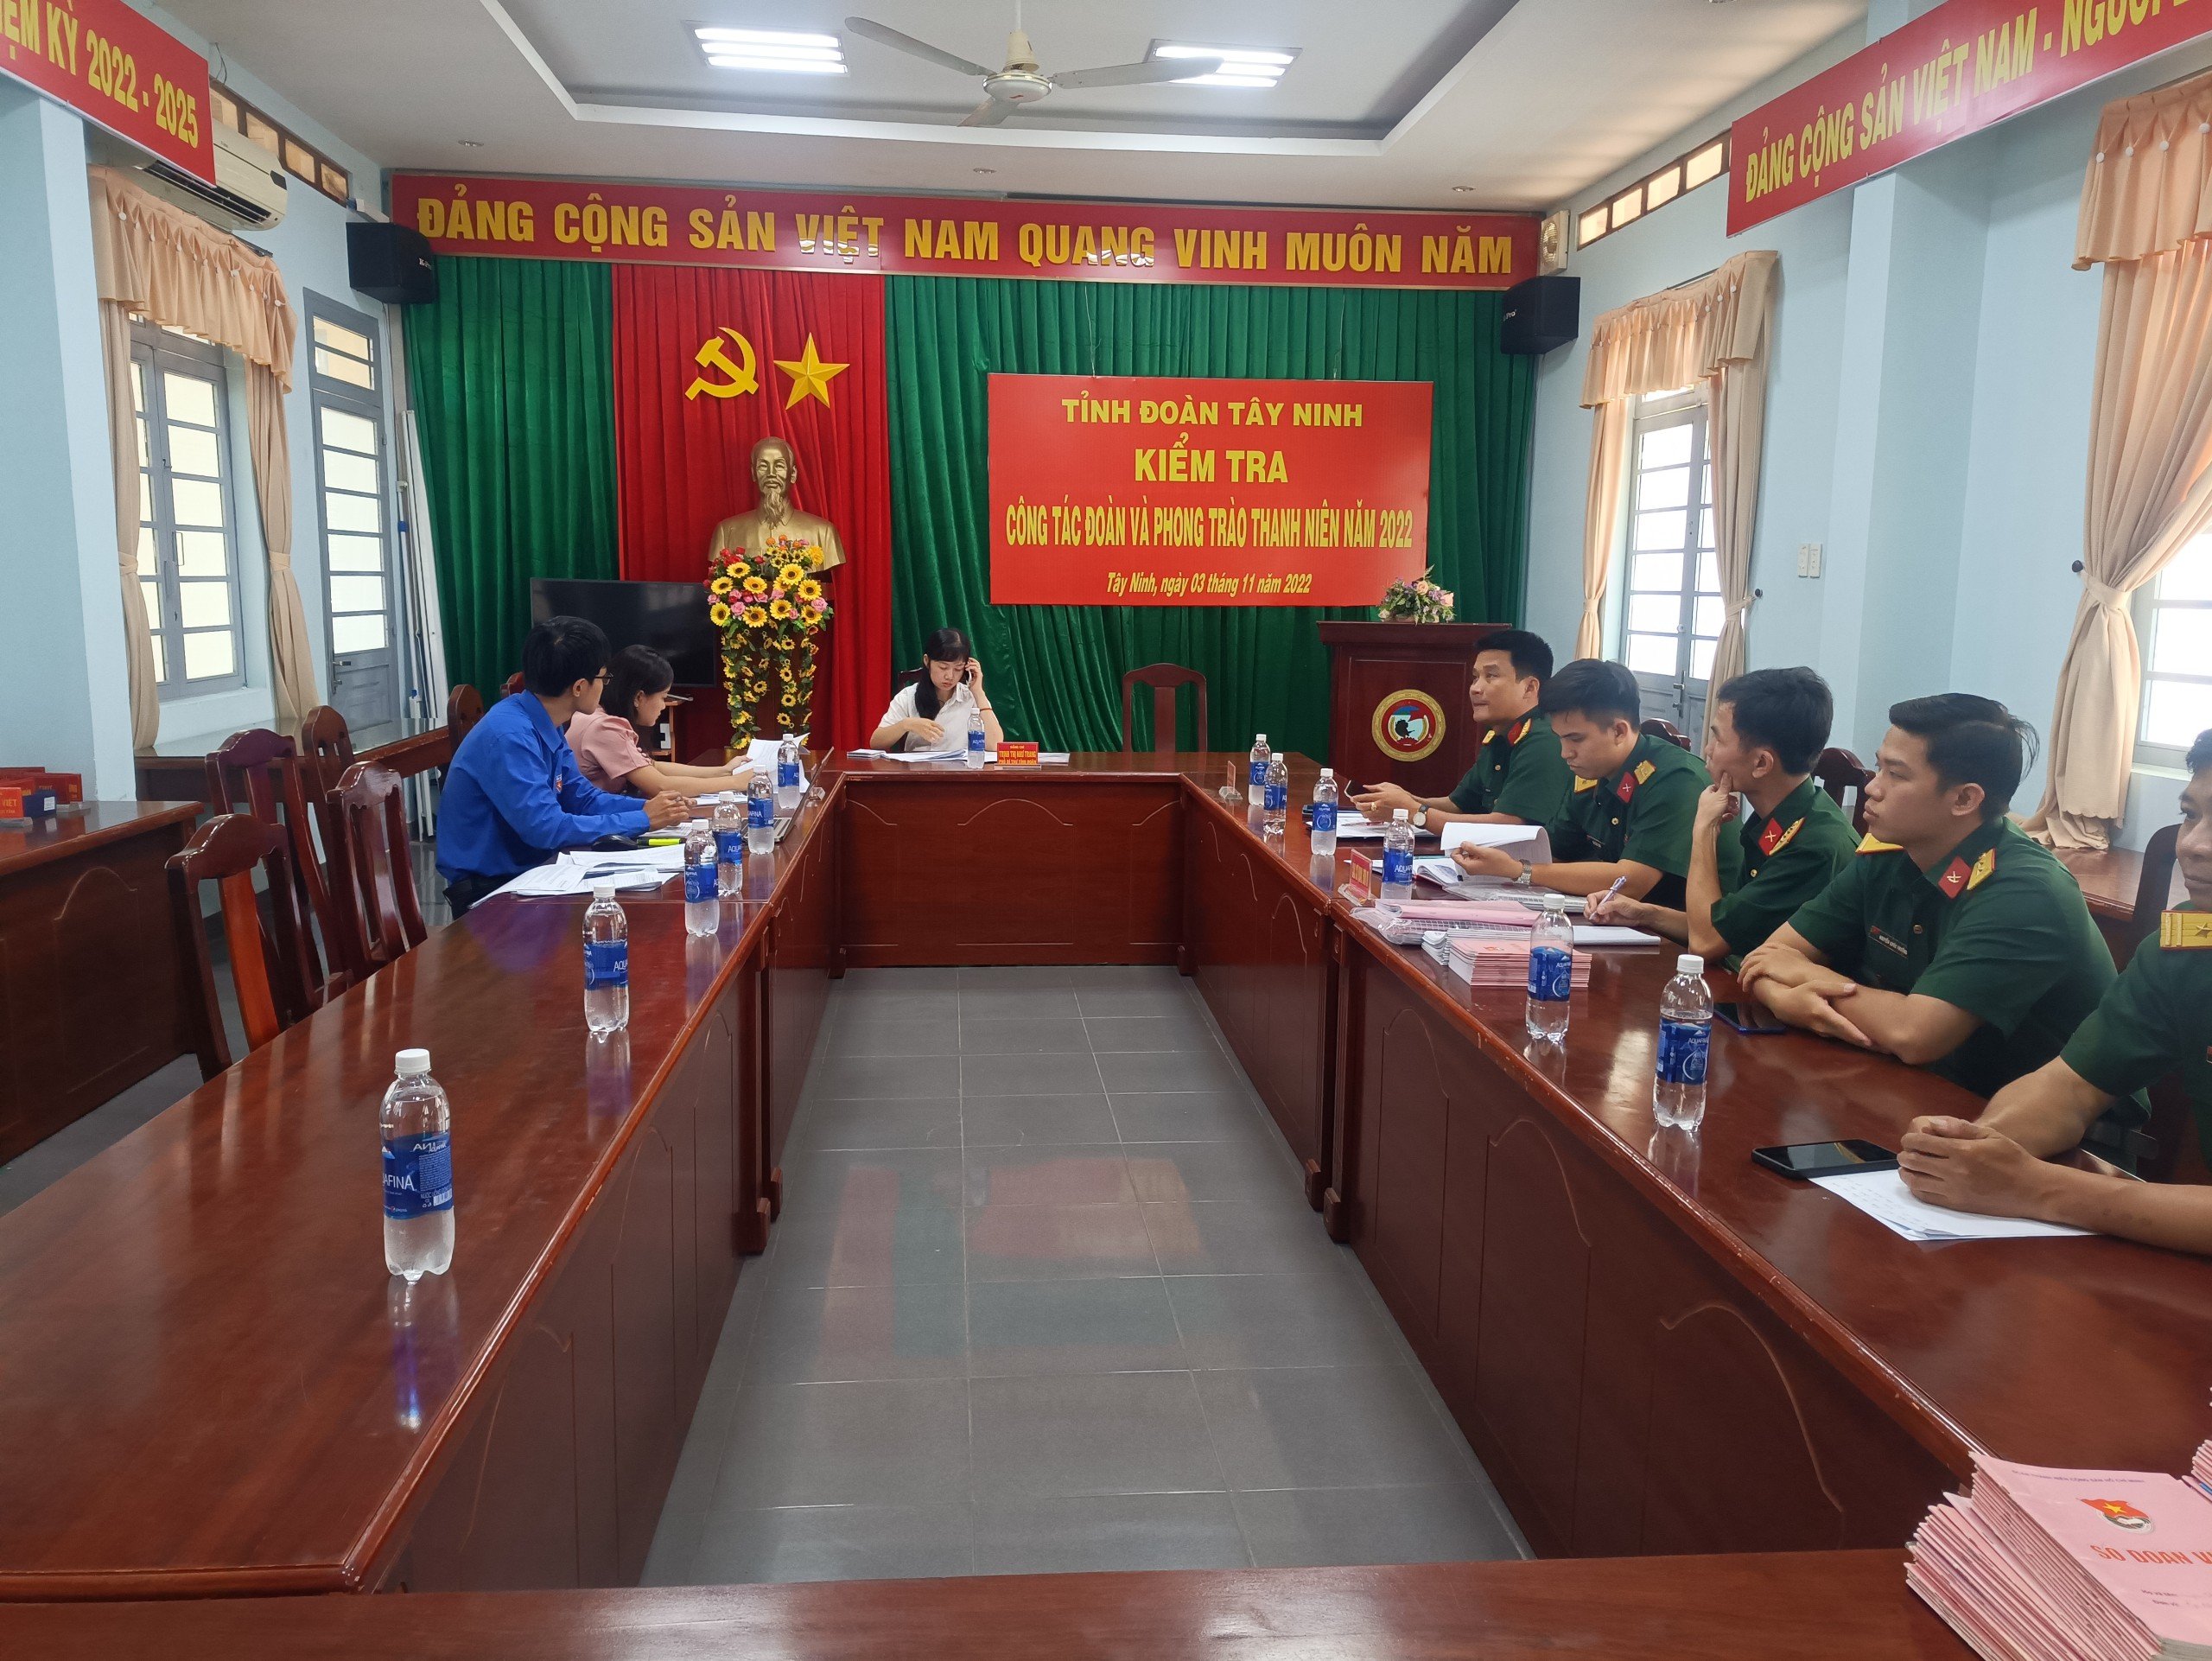 Tỉnh đoàn Tây Ninh hoàn thành kiểm tra công tác Đoàn và phong trào thanh thiếu nhi, công tác Hội và phong trào thanh niên năm 2022